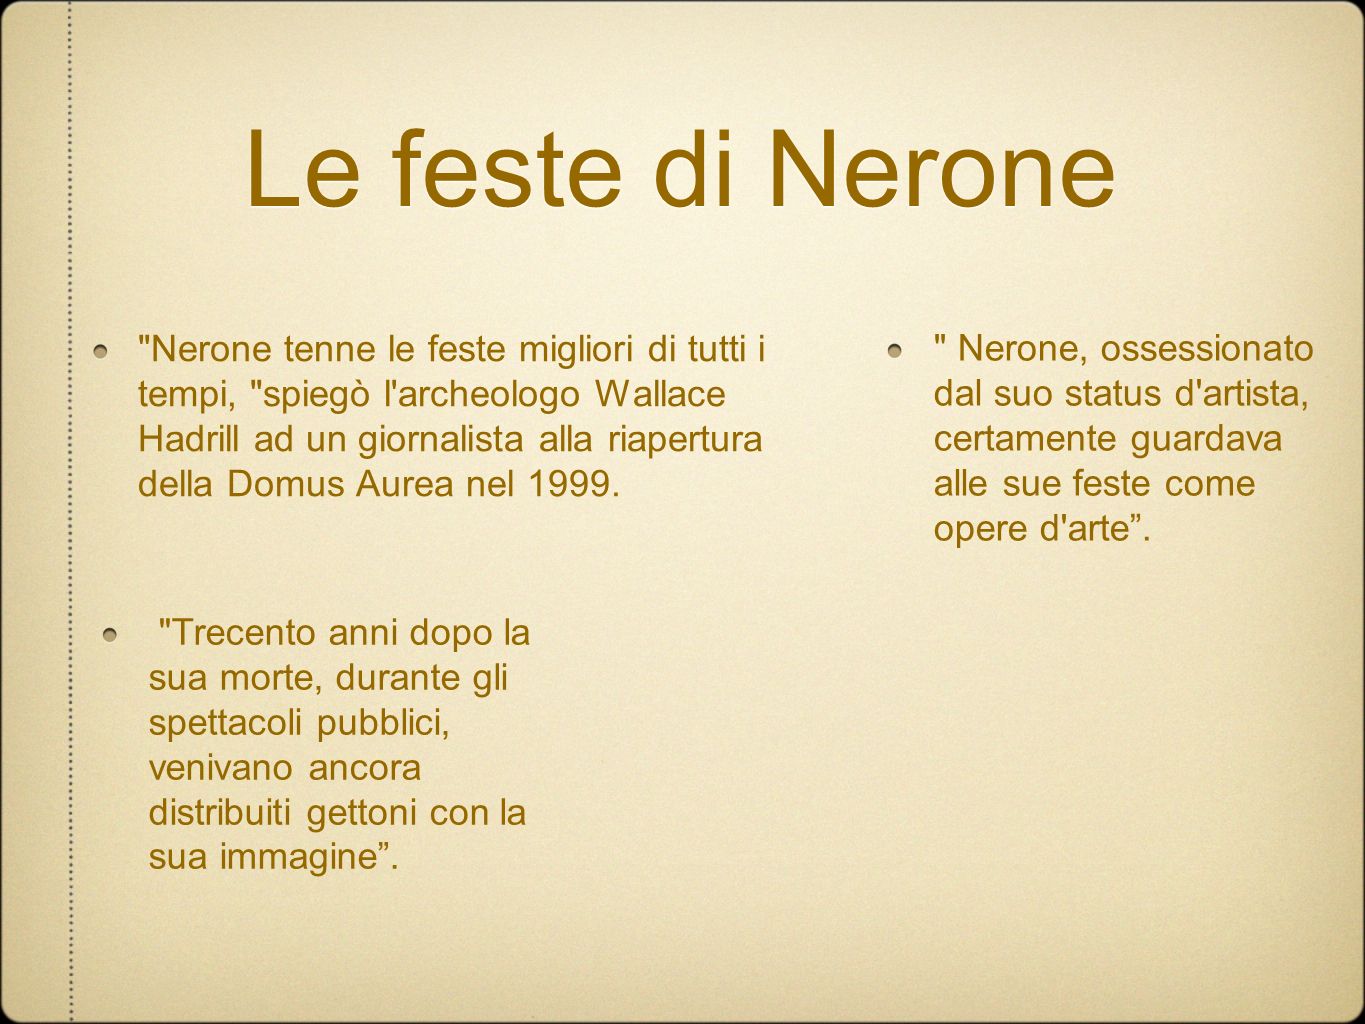 Le feste di Nerone